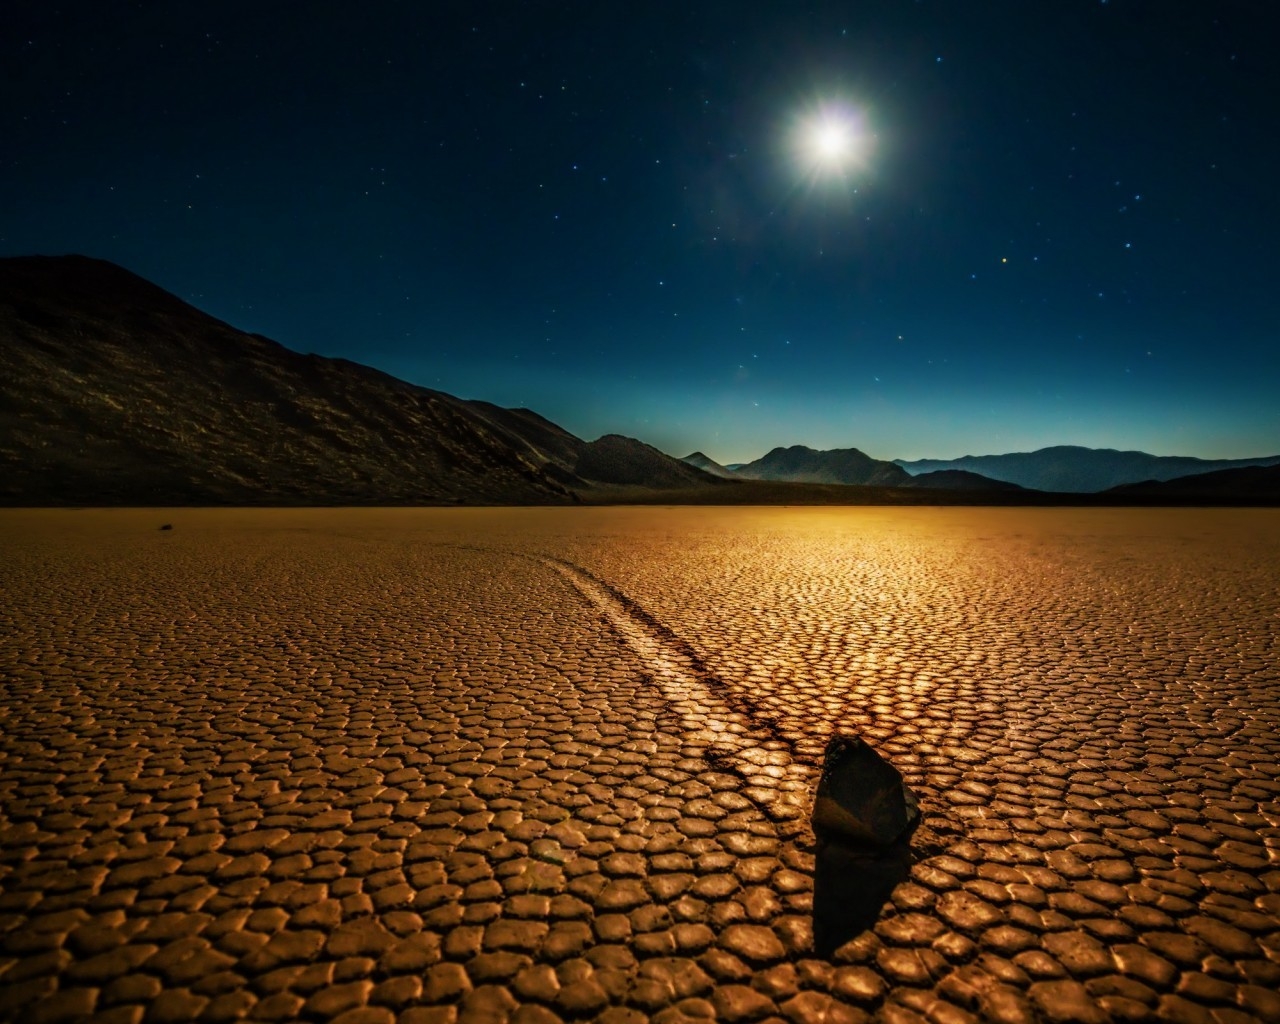 Desert Night Landscape for 1280 x 1024 resolution